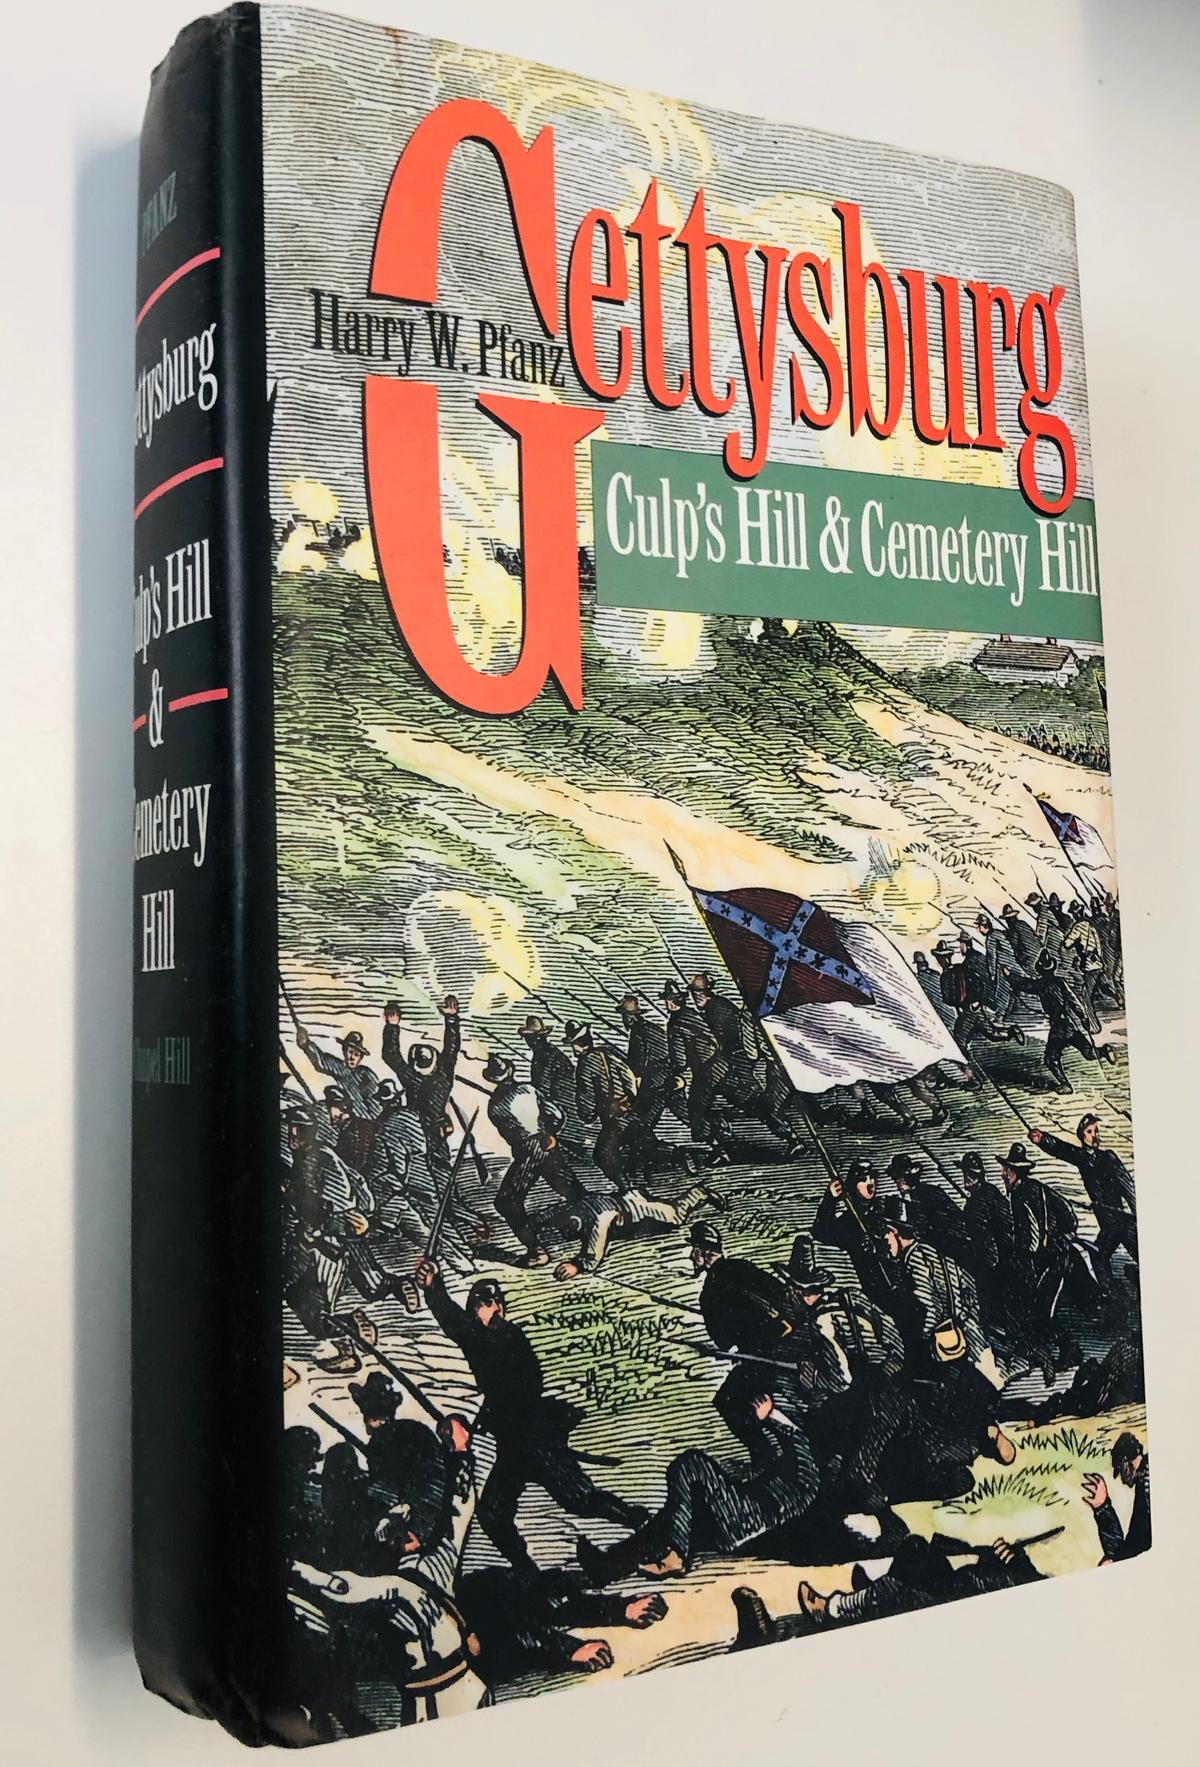 GETTYSBURG - Culp's Hill & Cemetery Hill by Harry W. Pfanz